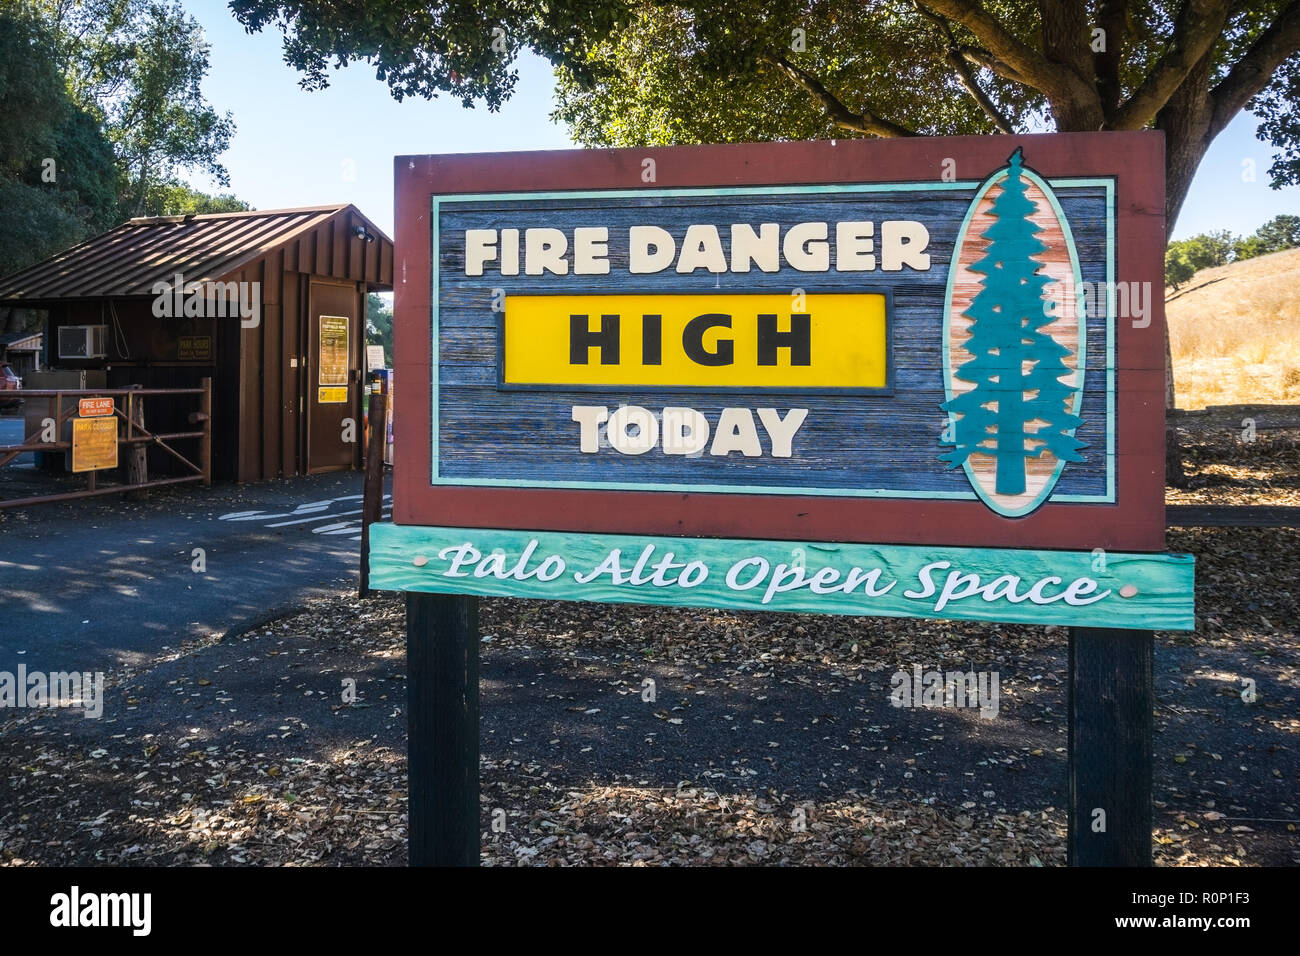 "El peligro de incendio de alta Hoy" publicado en la entrada Palo Alto estribaciones Espacio Abierto, área de la bahía de San Francisco, California Foto de stock